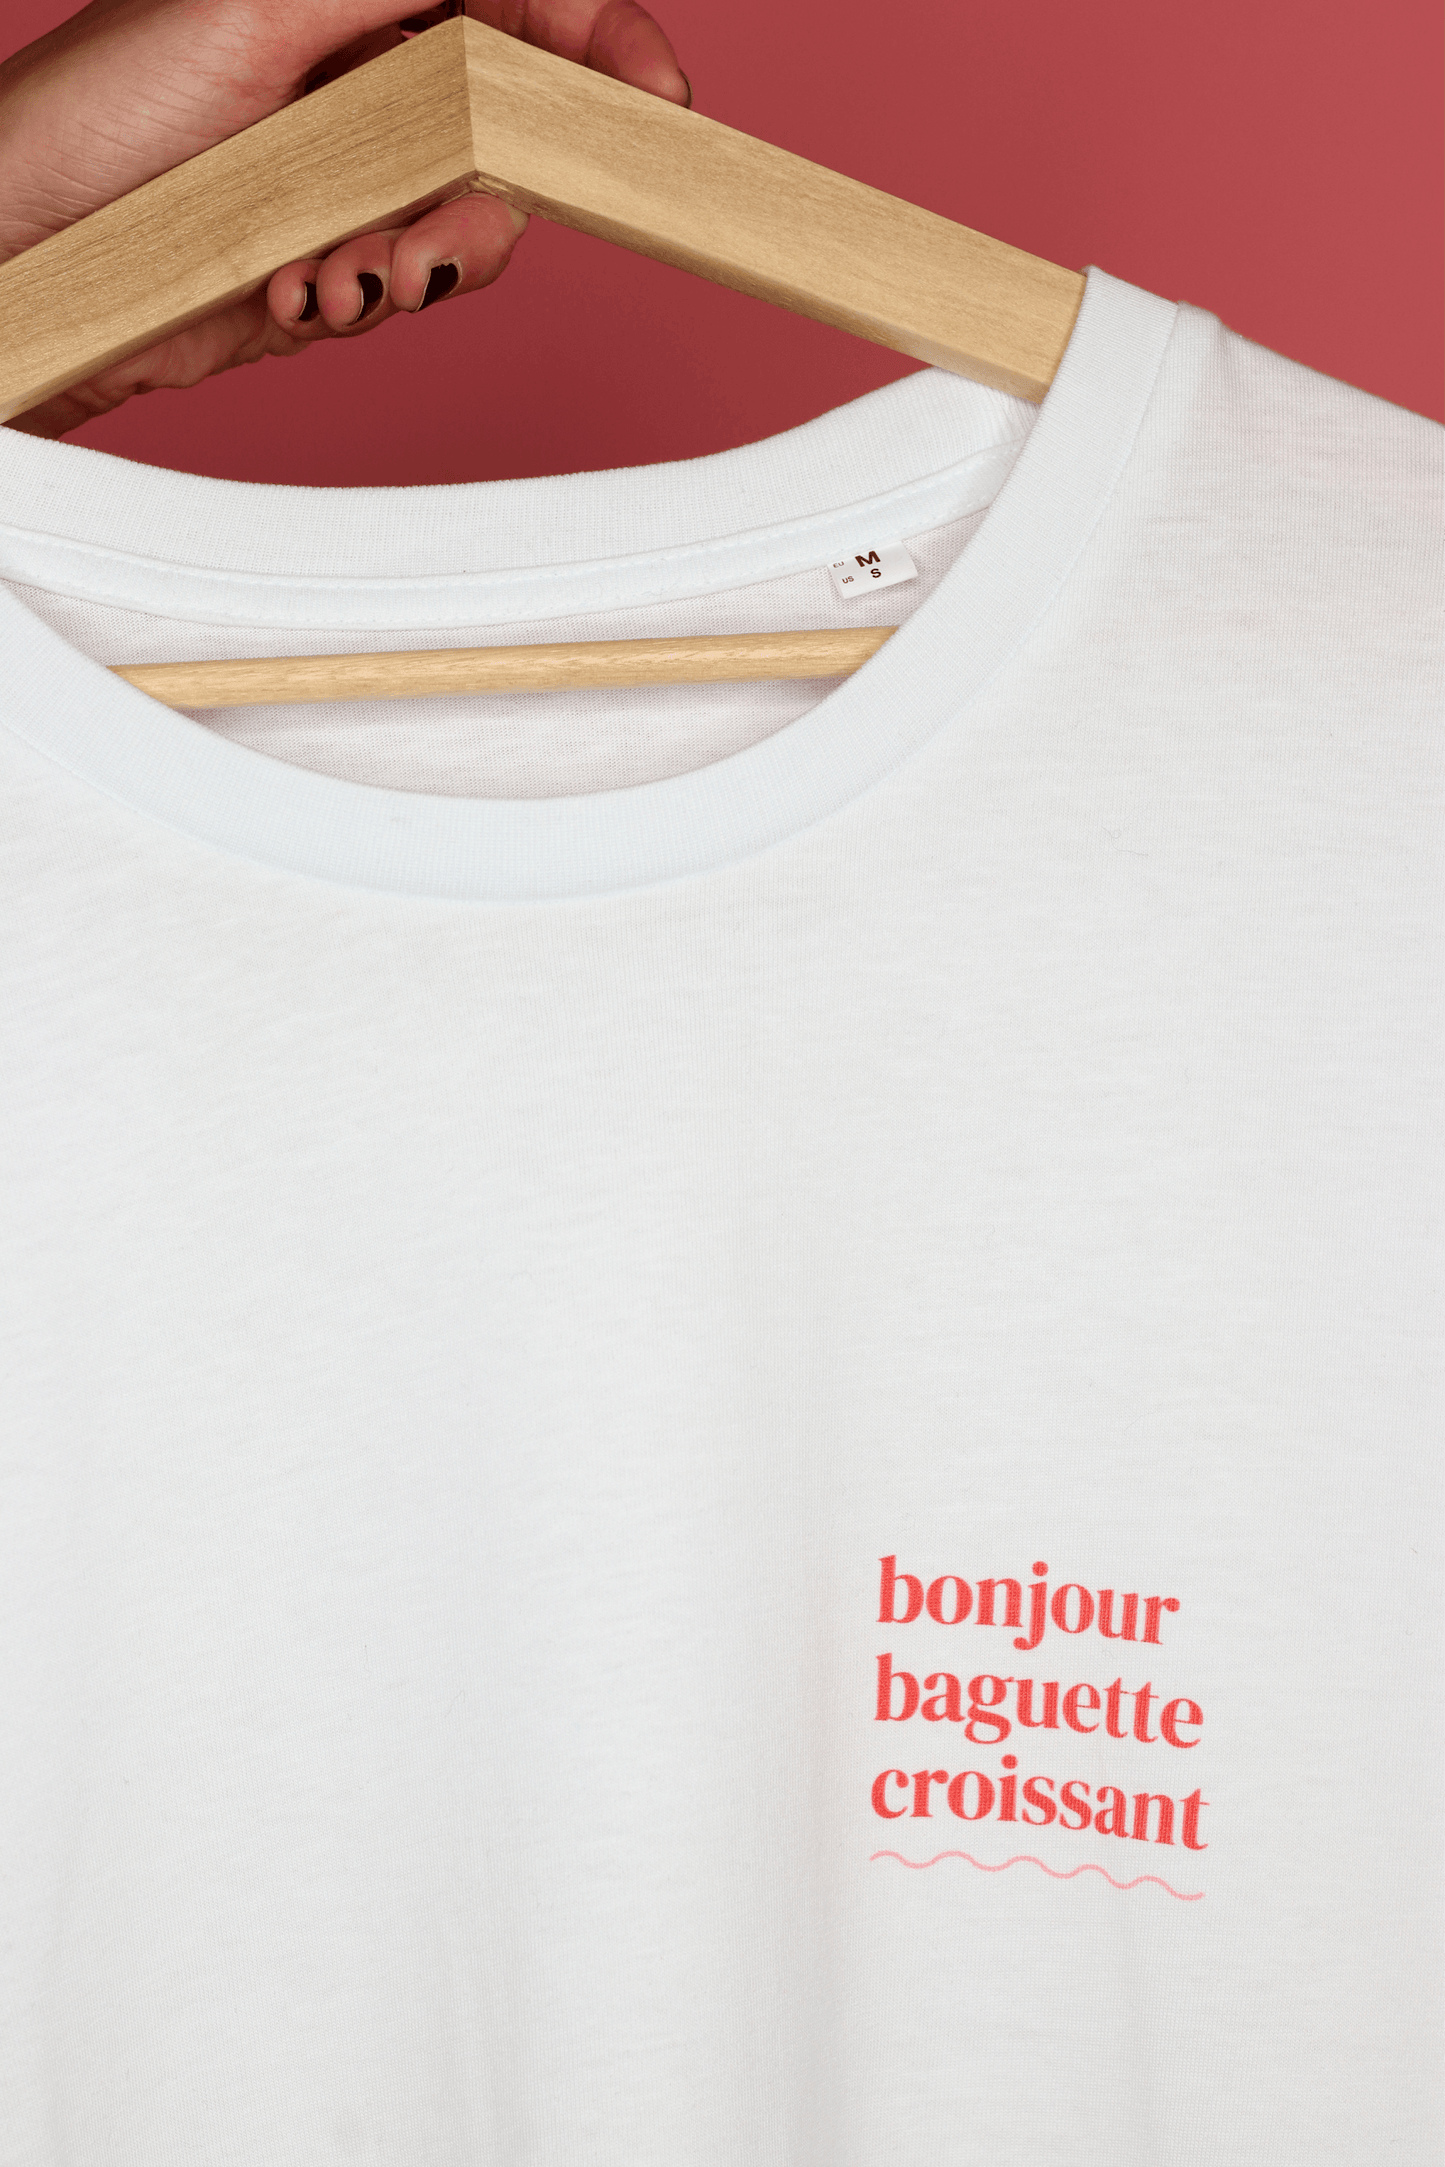 Bonjour Baguette Croissant T-Shirt - Jack&Sam